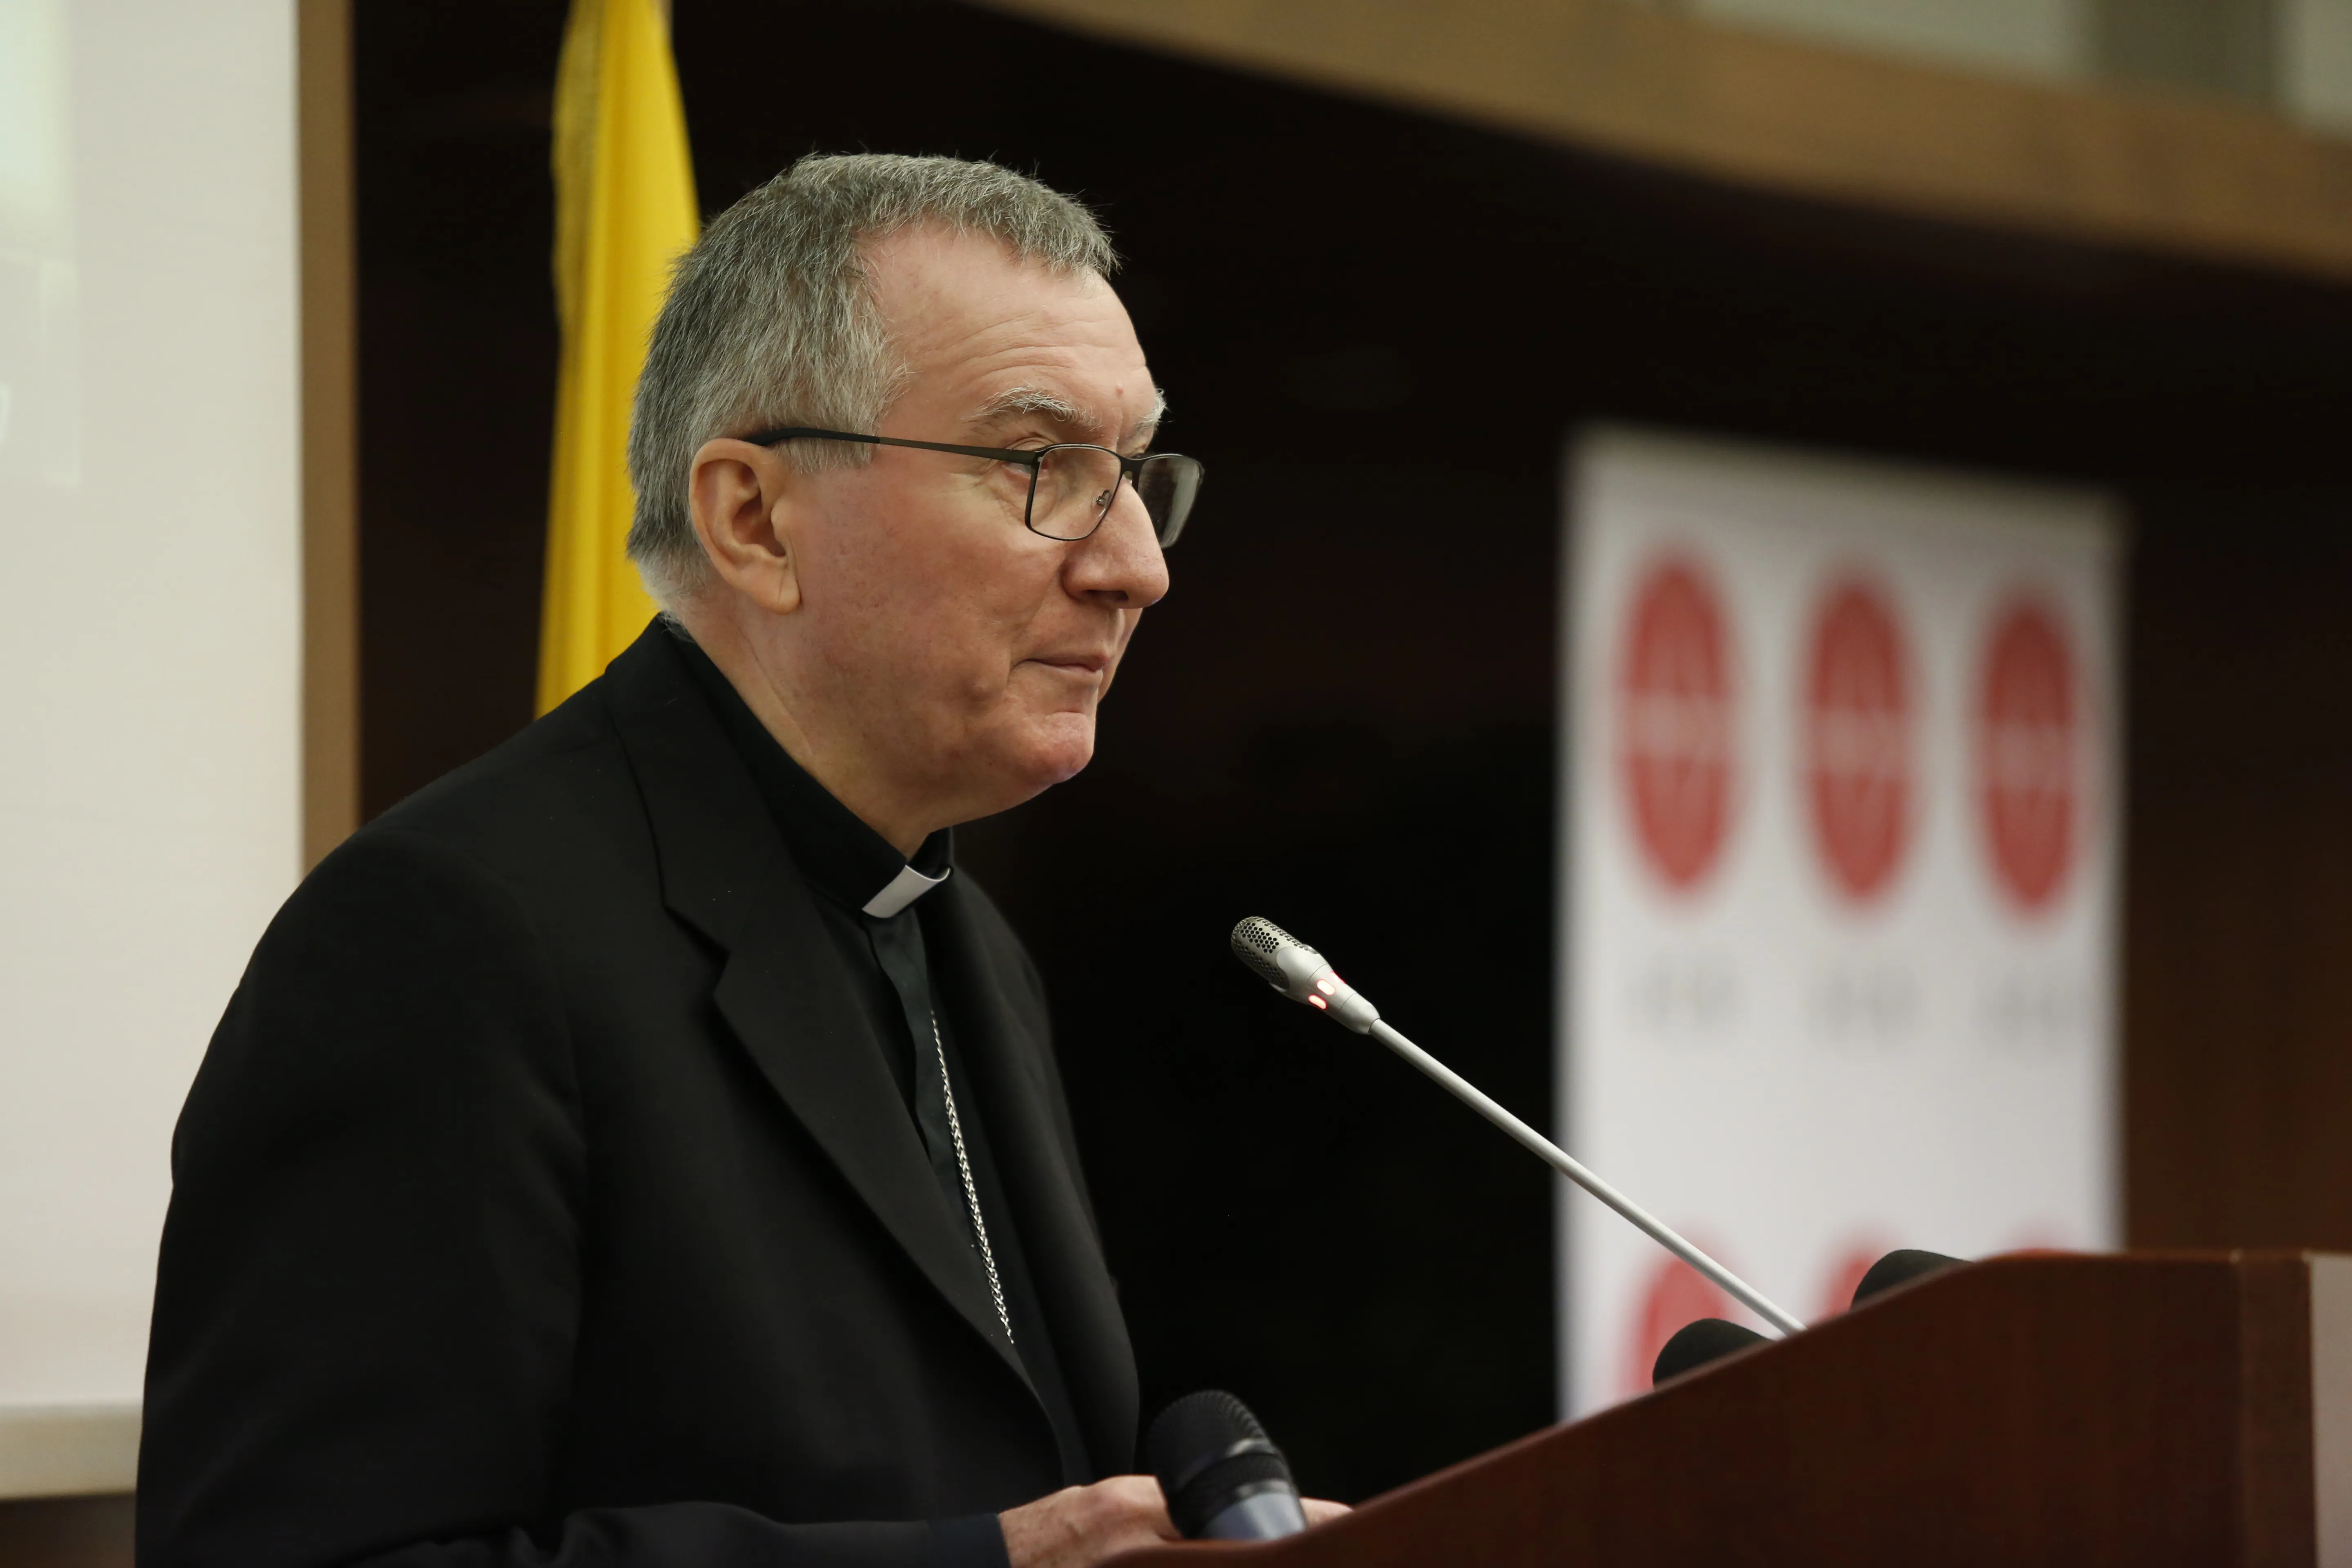 Cardenal Parolin: En el Vaticano estamos en la política de “pequeños pasos” con China